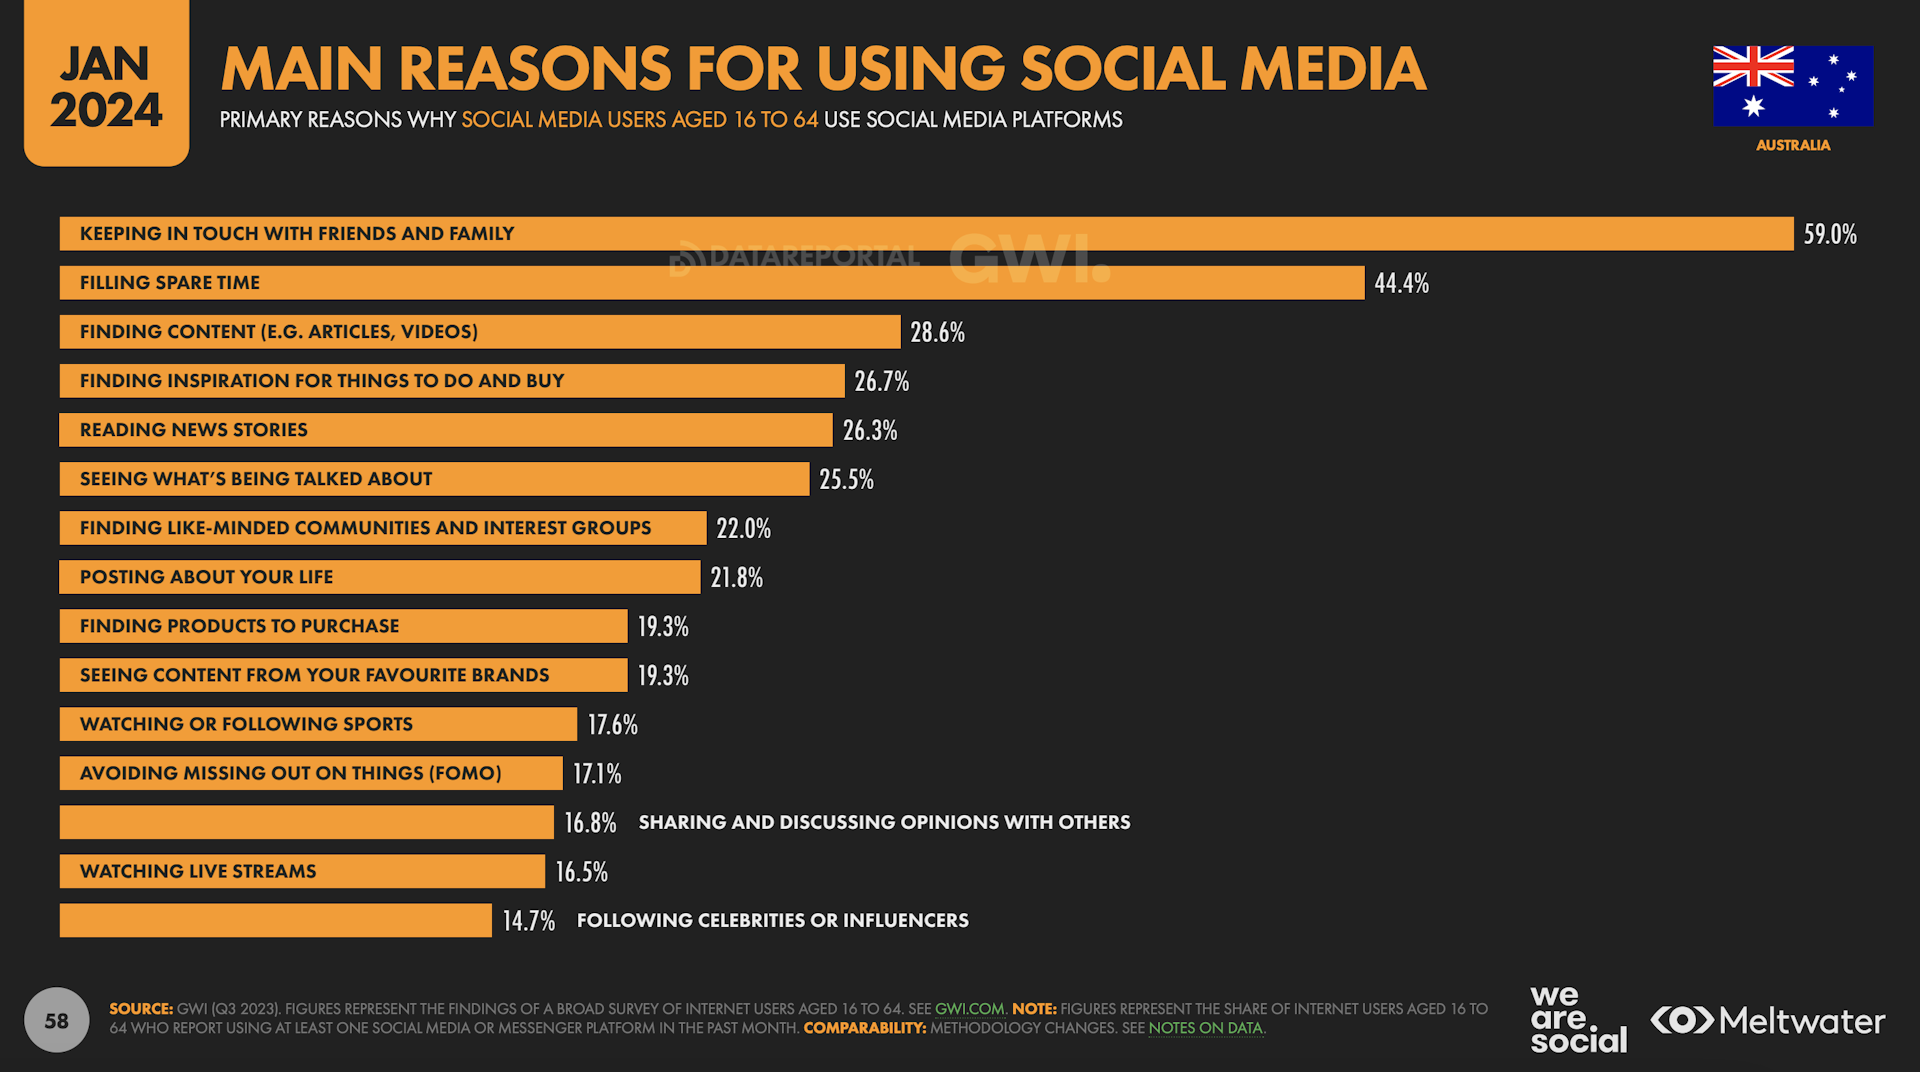 Main reasons for using social media based on Global Digital Report 2024 for Australia
